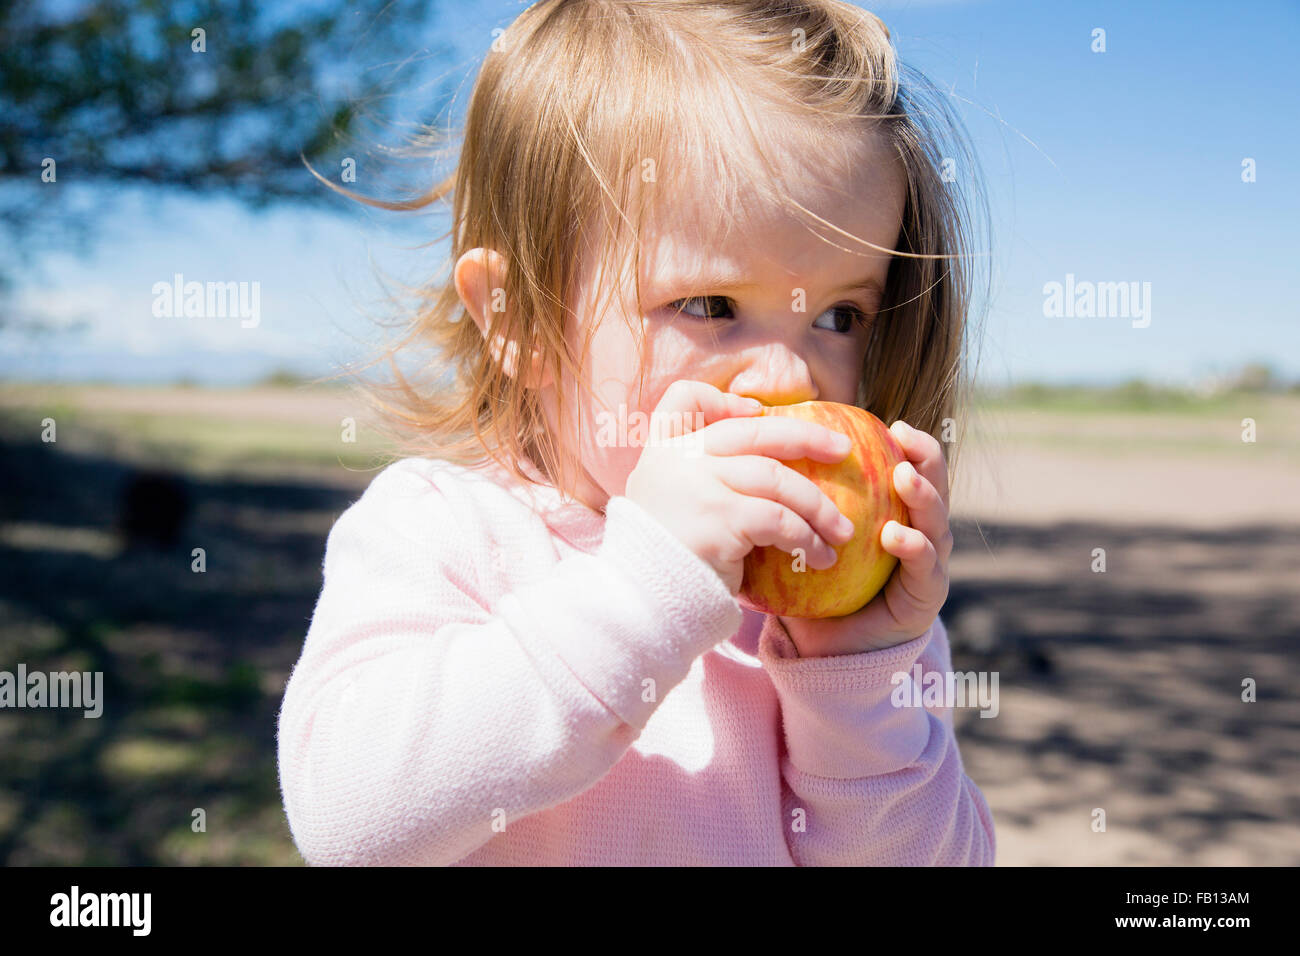 Portrait of girl (2-3) eating apple Stock Photo